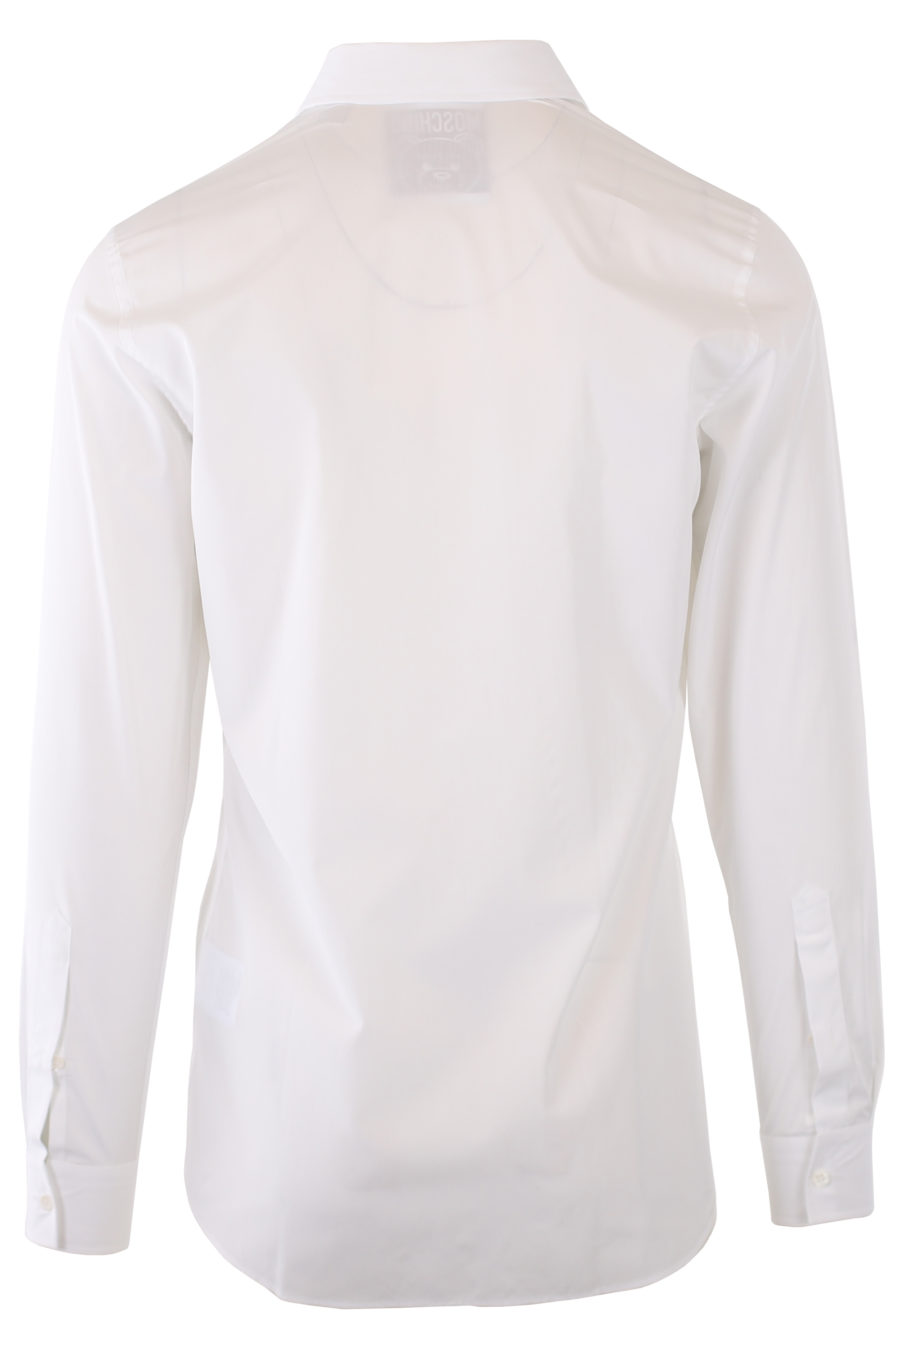 Camisa blanca con logo oso - IMG 9305